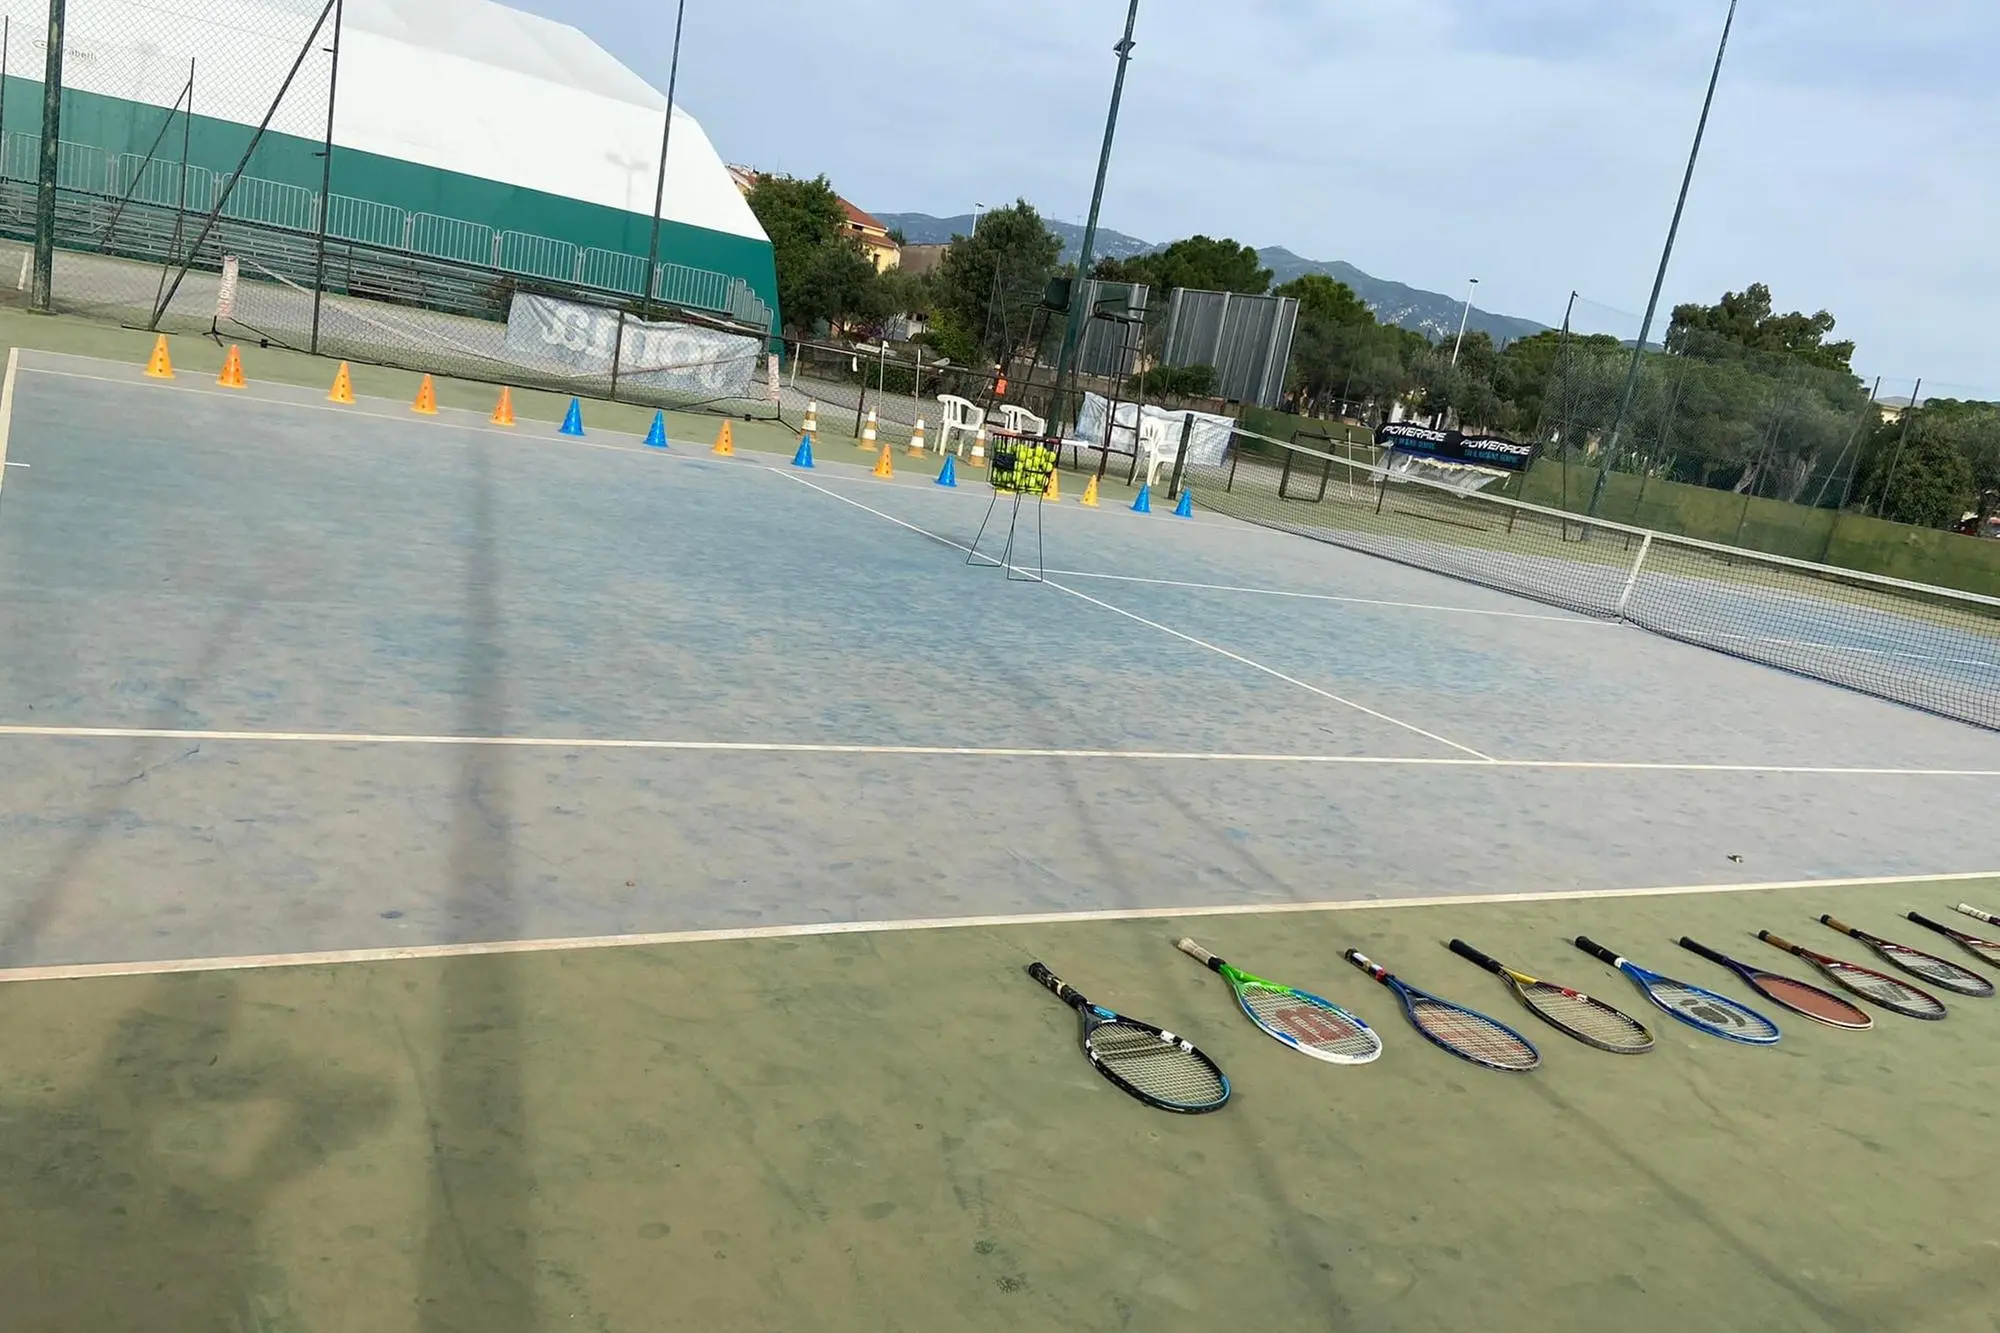 L'impianto del Tennis club Pula (foto Murgana)